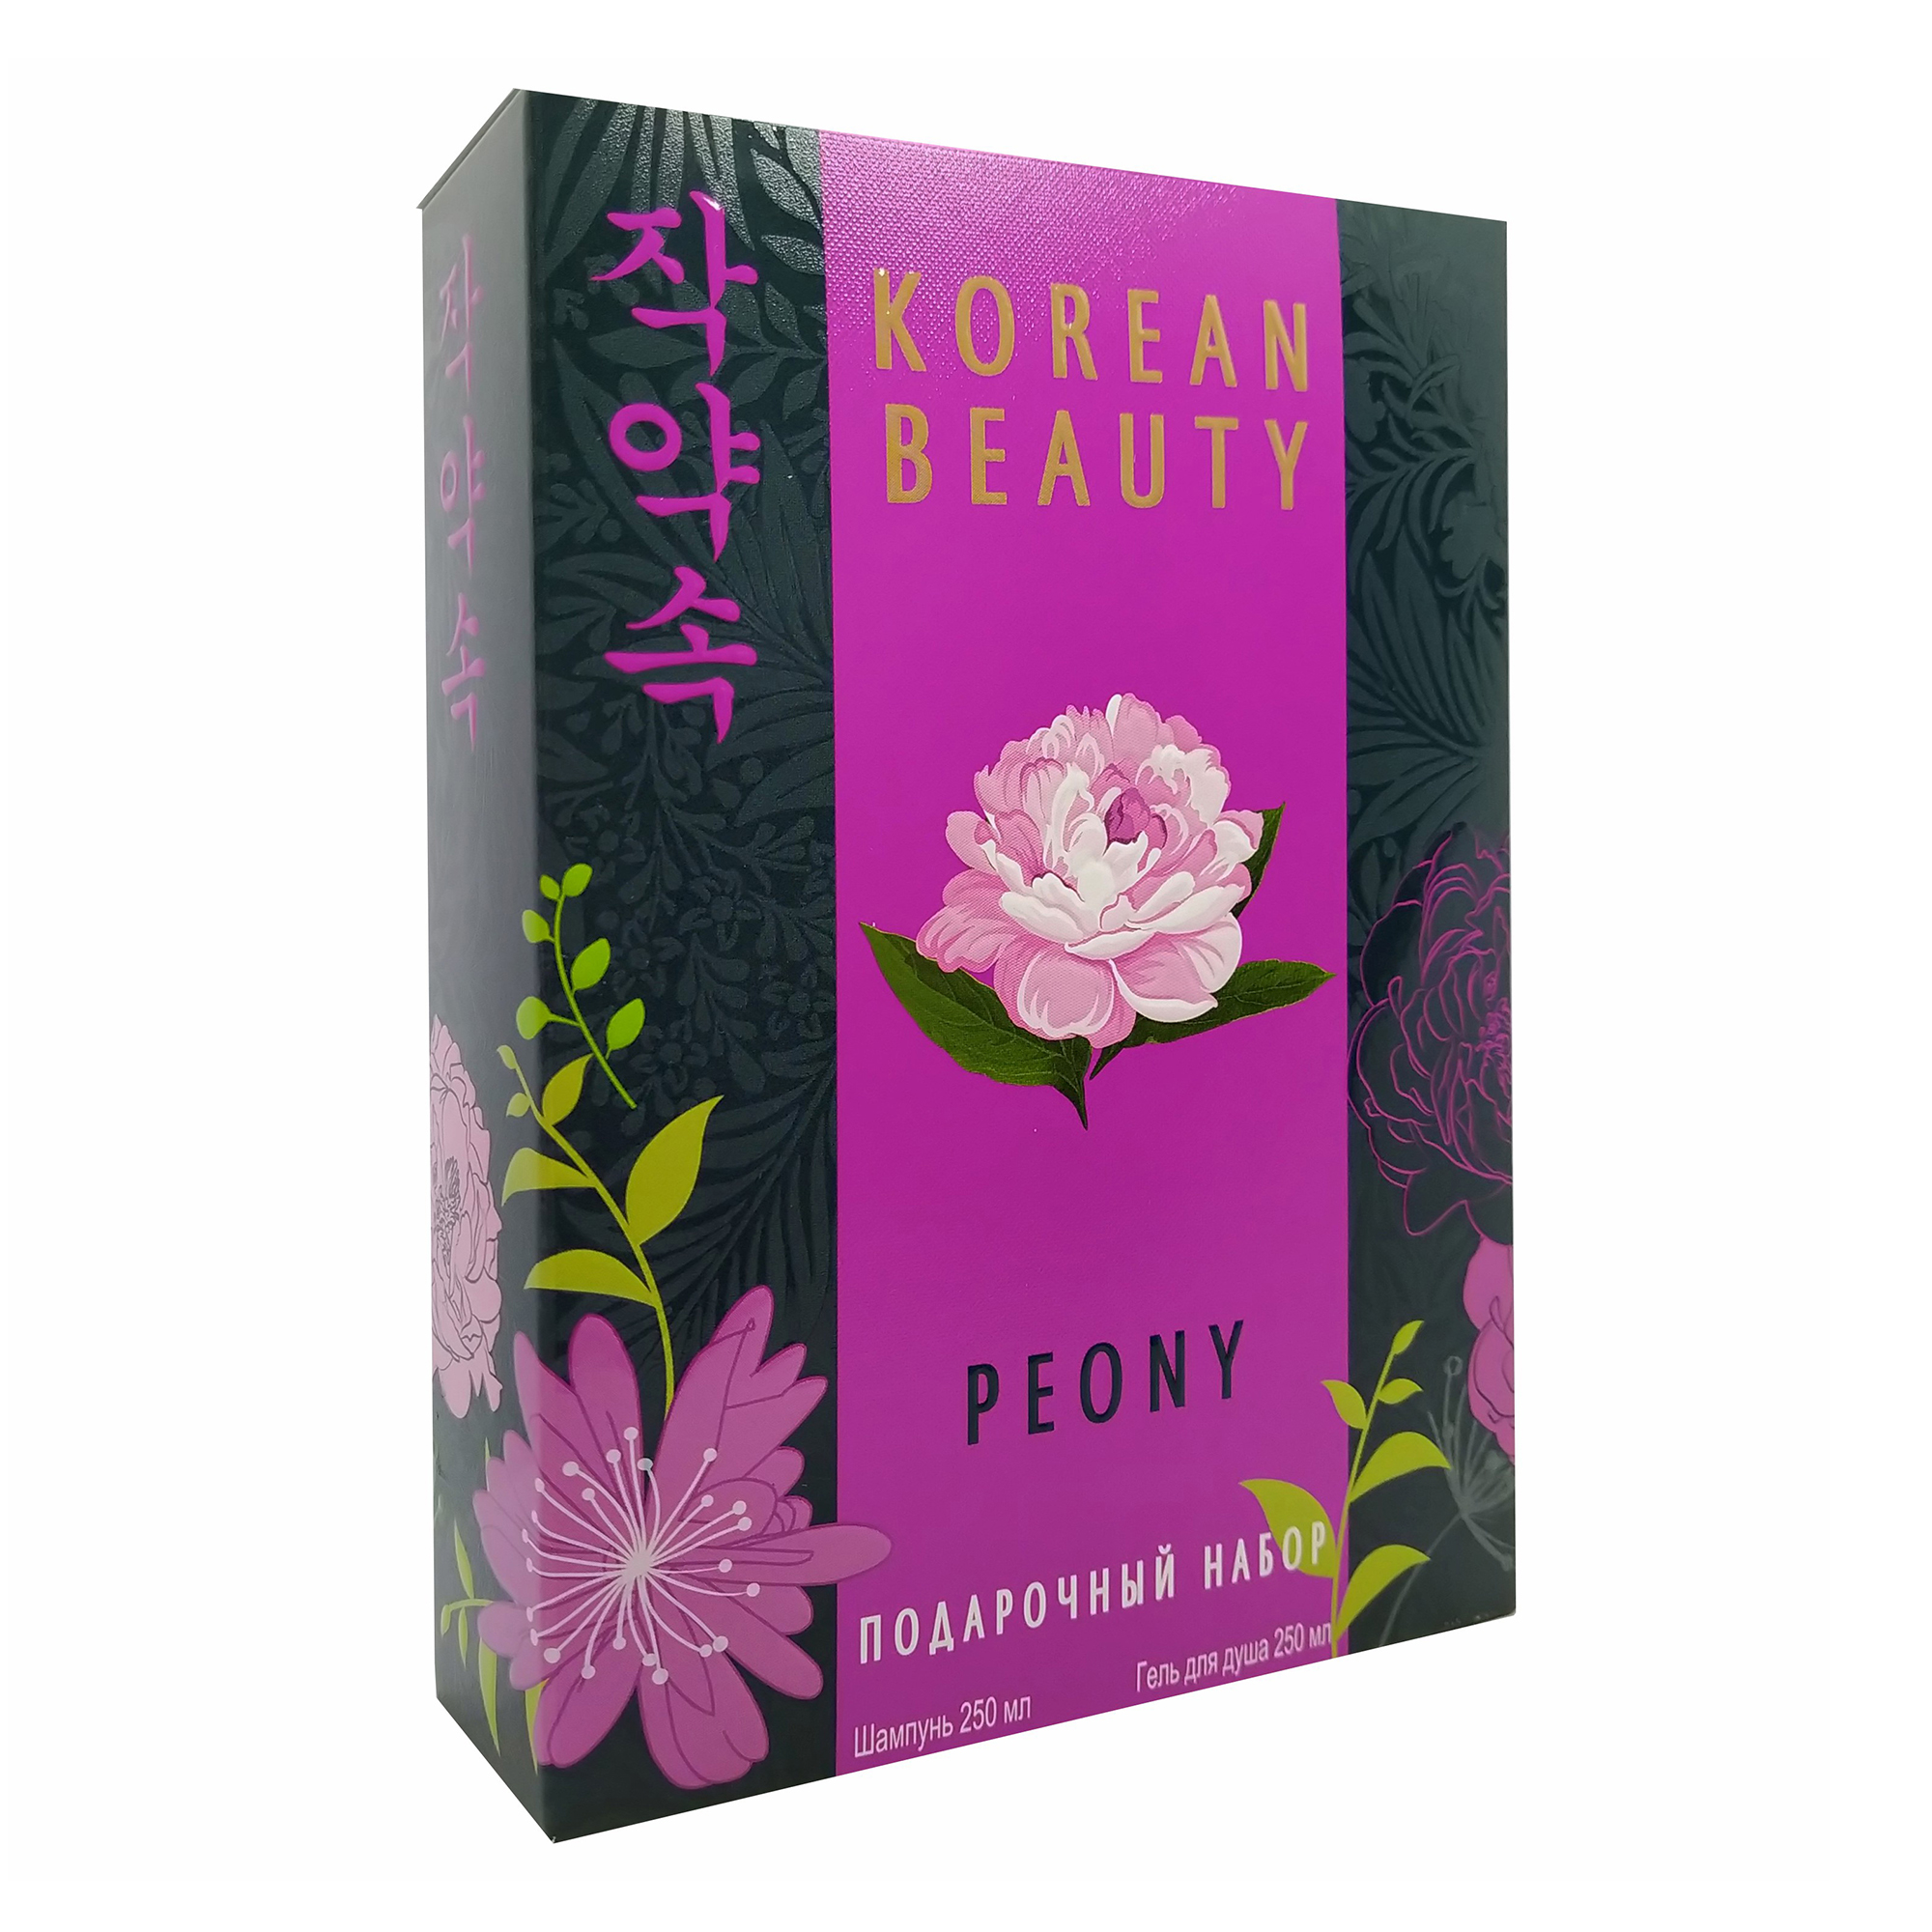 Набор средств для волос и тела Festiva Mini Korean Beauty Peony для женщин 2 предмета